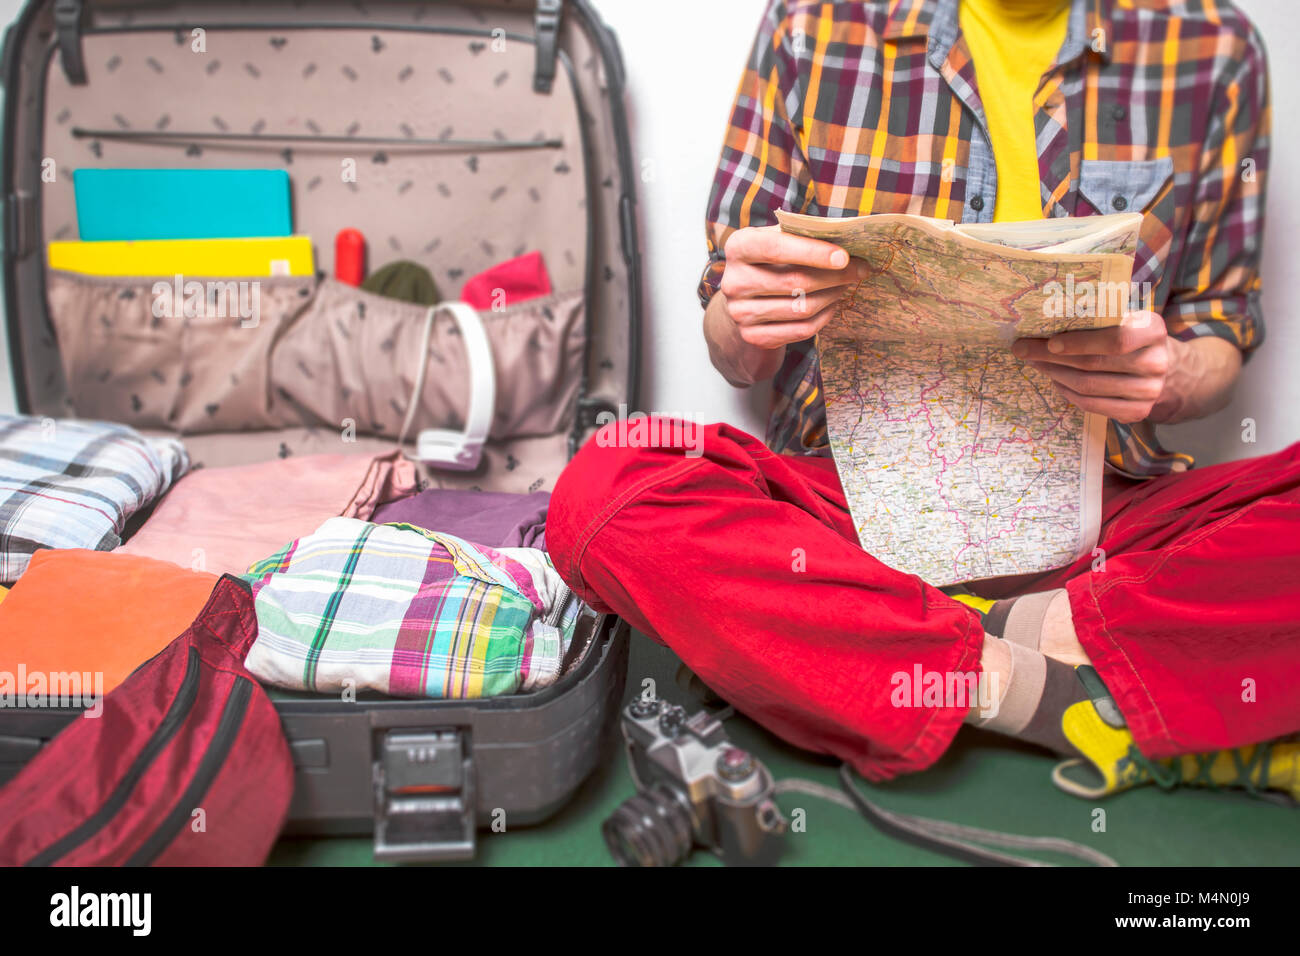 Ein Mann ist eine Reise planen, eine touristische Reise, auf einer Karte suchen, einen offenen Koffer. Stockfoto